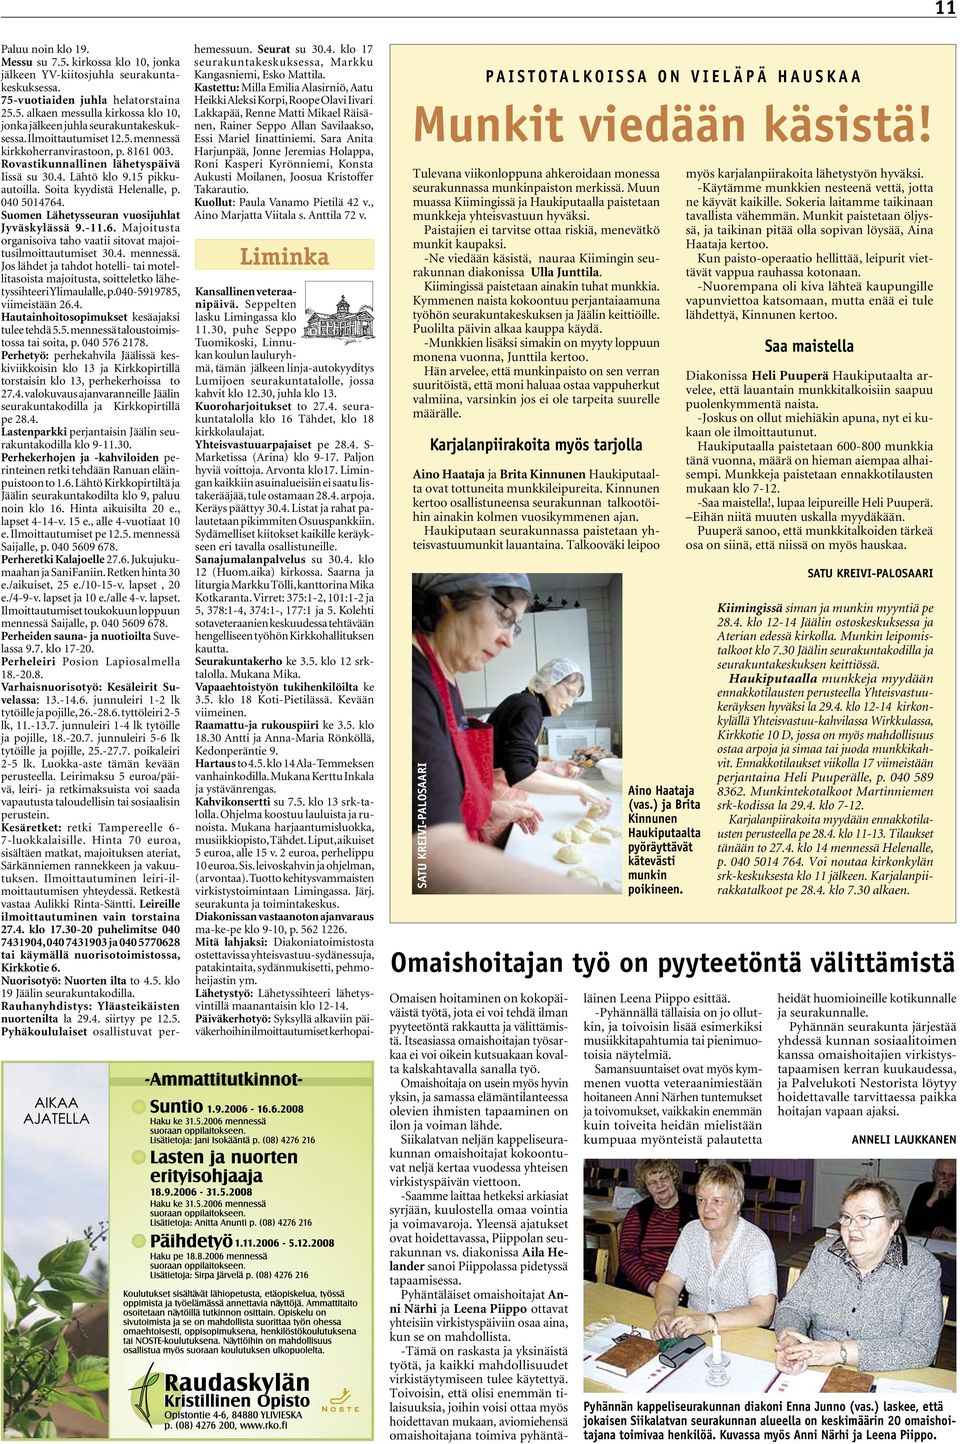 Suomen Lähetysseuran vuosijuhlat Jyväskylässä 9.-11.6. Majoitusta organisoiva taho vaatii sitovat majoitusilmoittautumiset 30.4. mennessä.